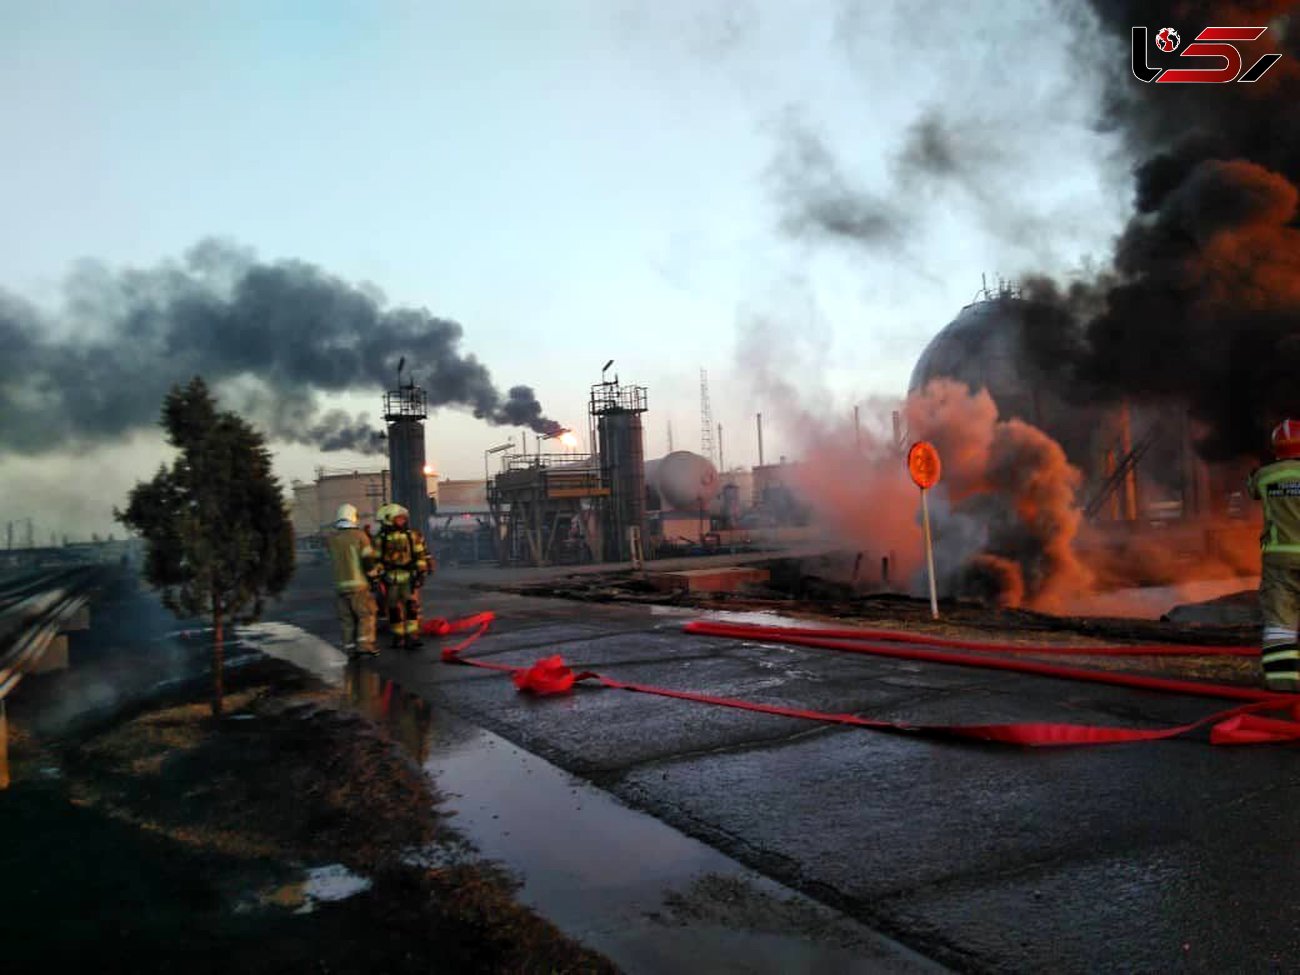 احتمال خرابکاری در حادثه آتش سوزی پالایشگاه تهران تکذیب شد +عکس